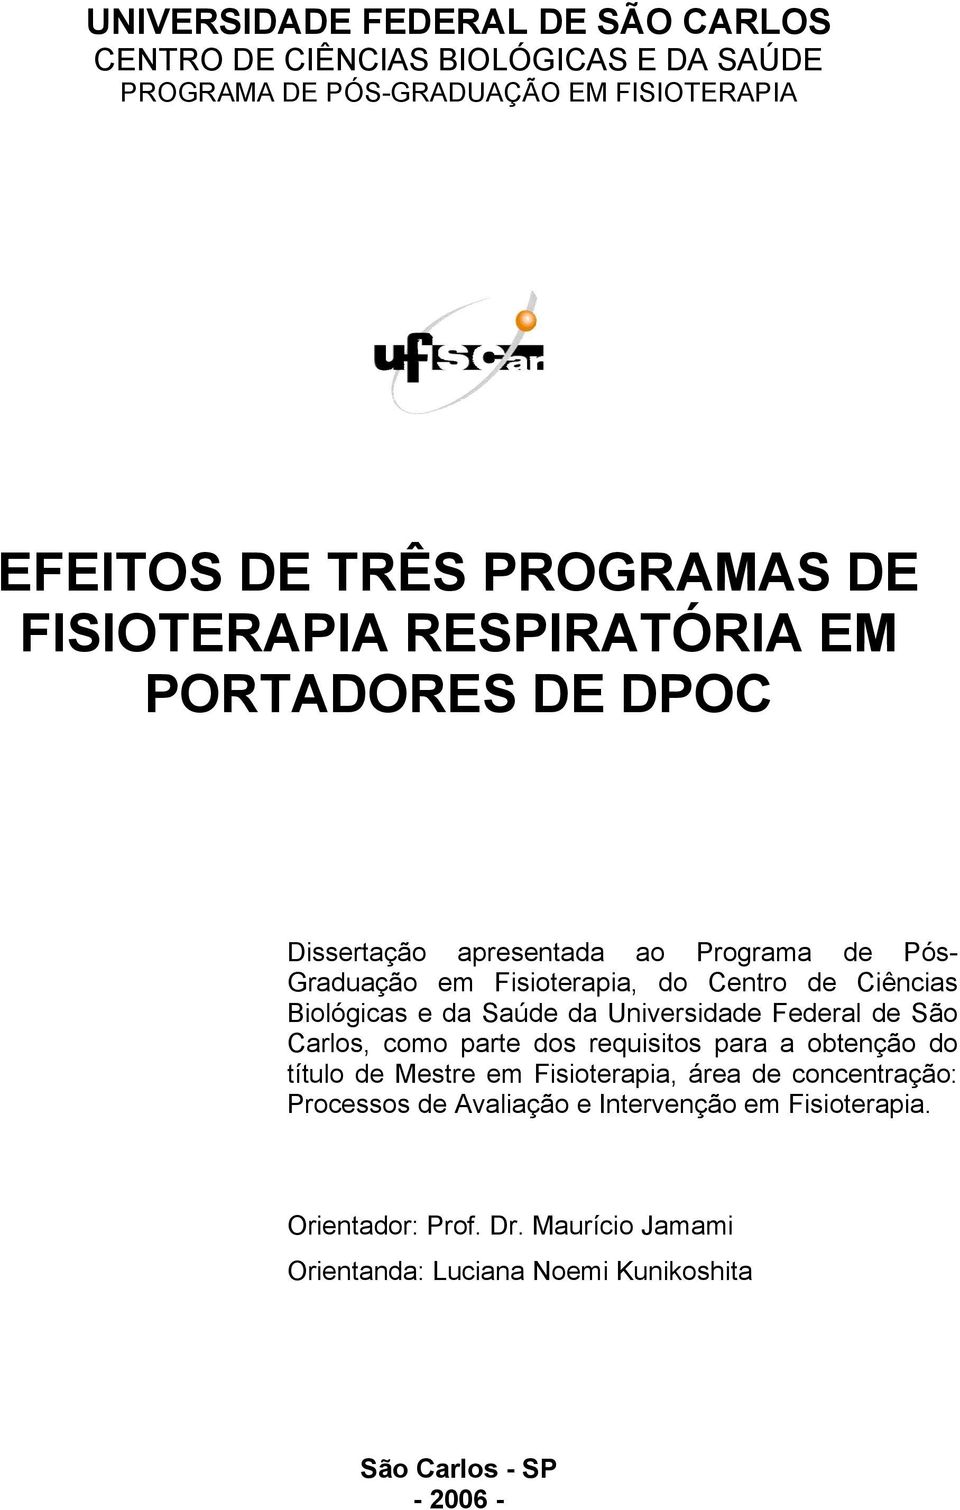 Biológicas e da Saúde da Universidade Federal de São Carlos, como parte dos requisitos para a obtenção do título de Mestre em Fisioterapia, área de